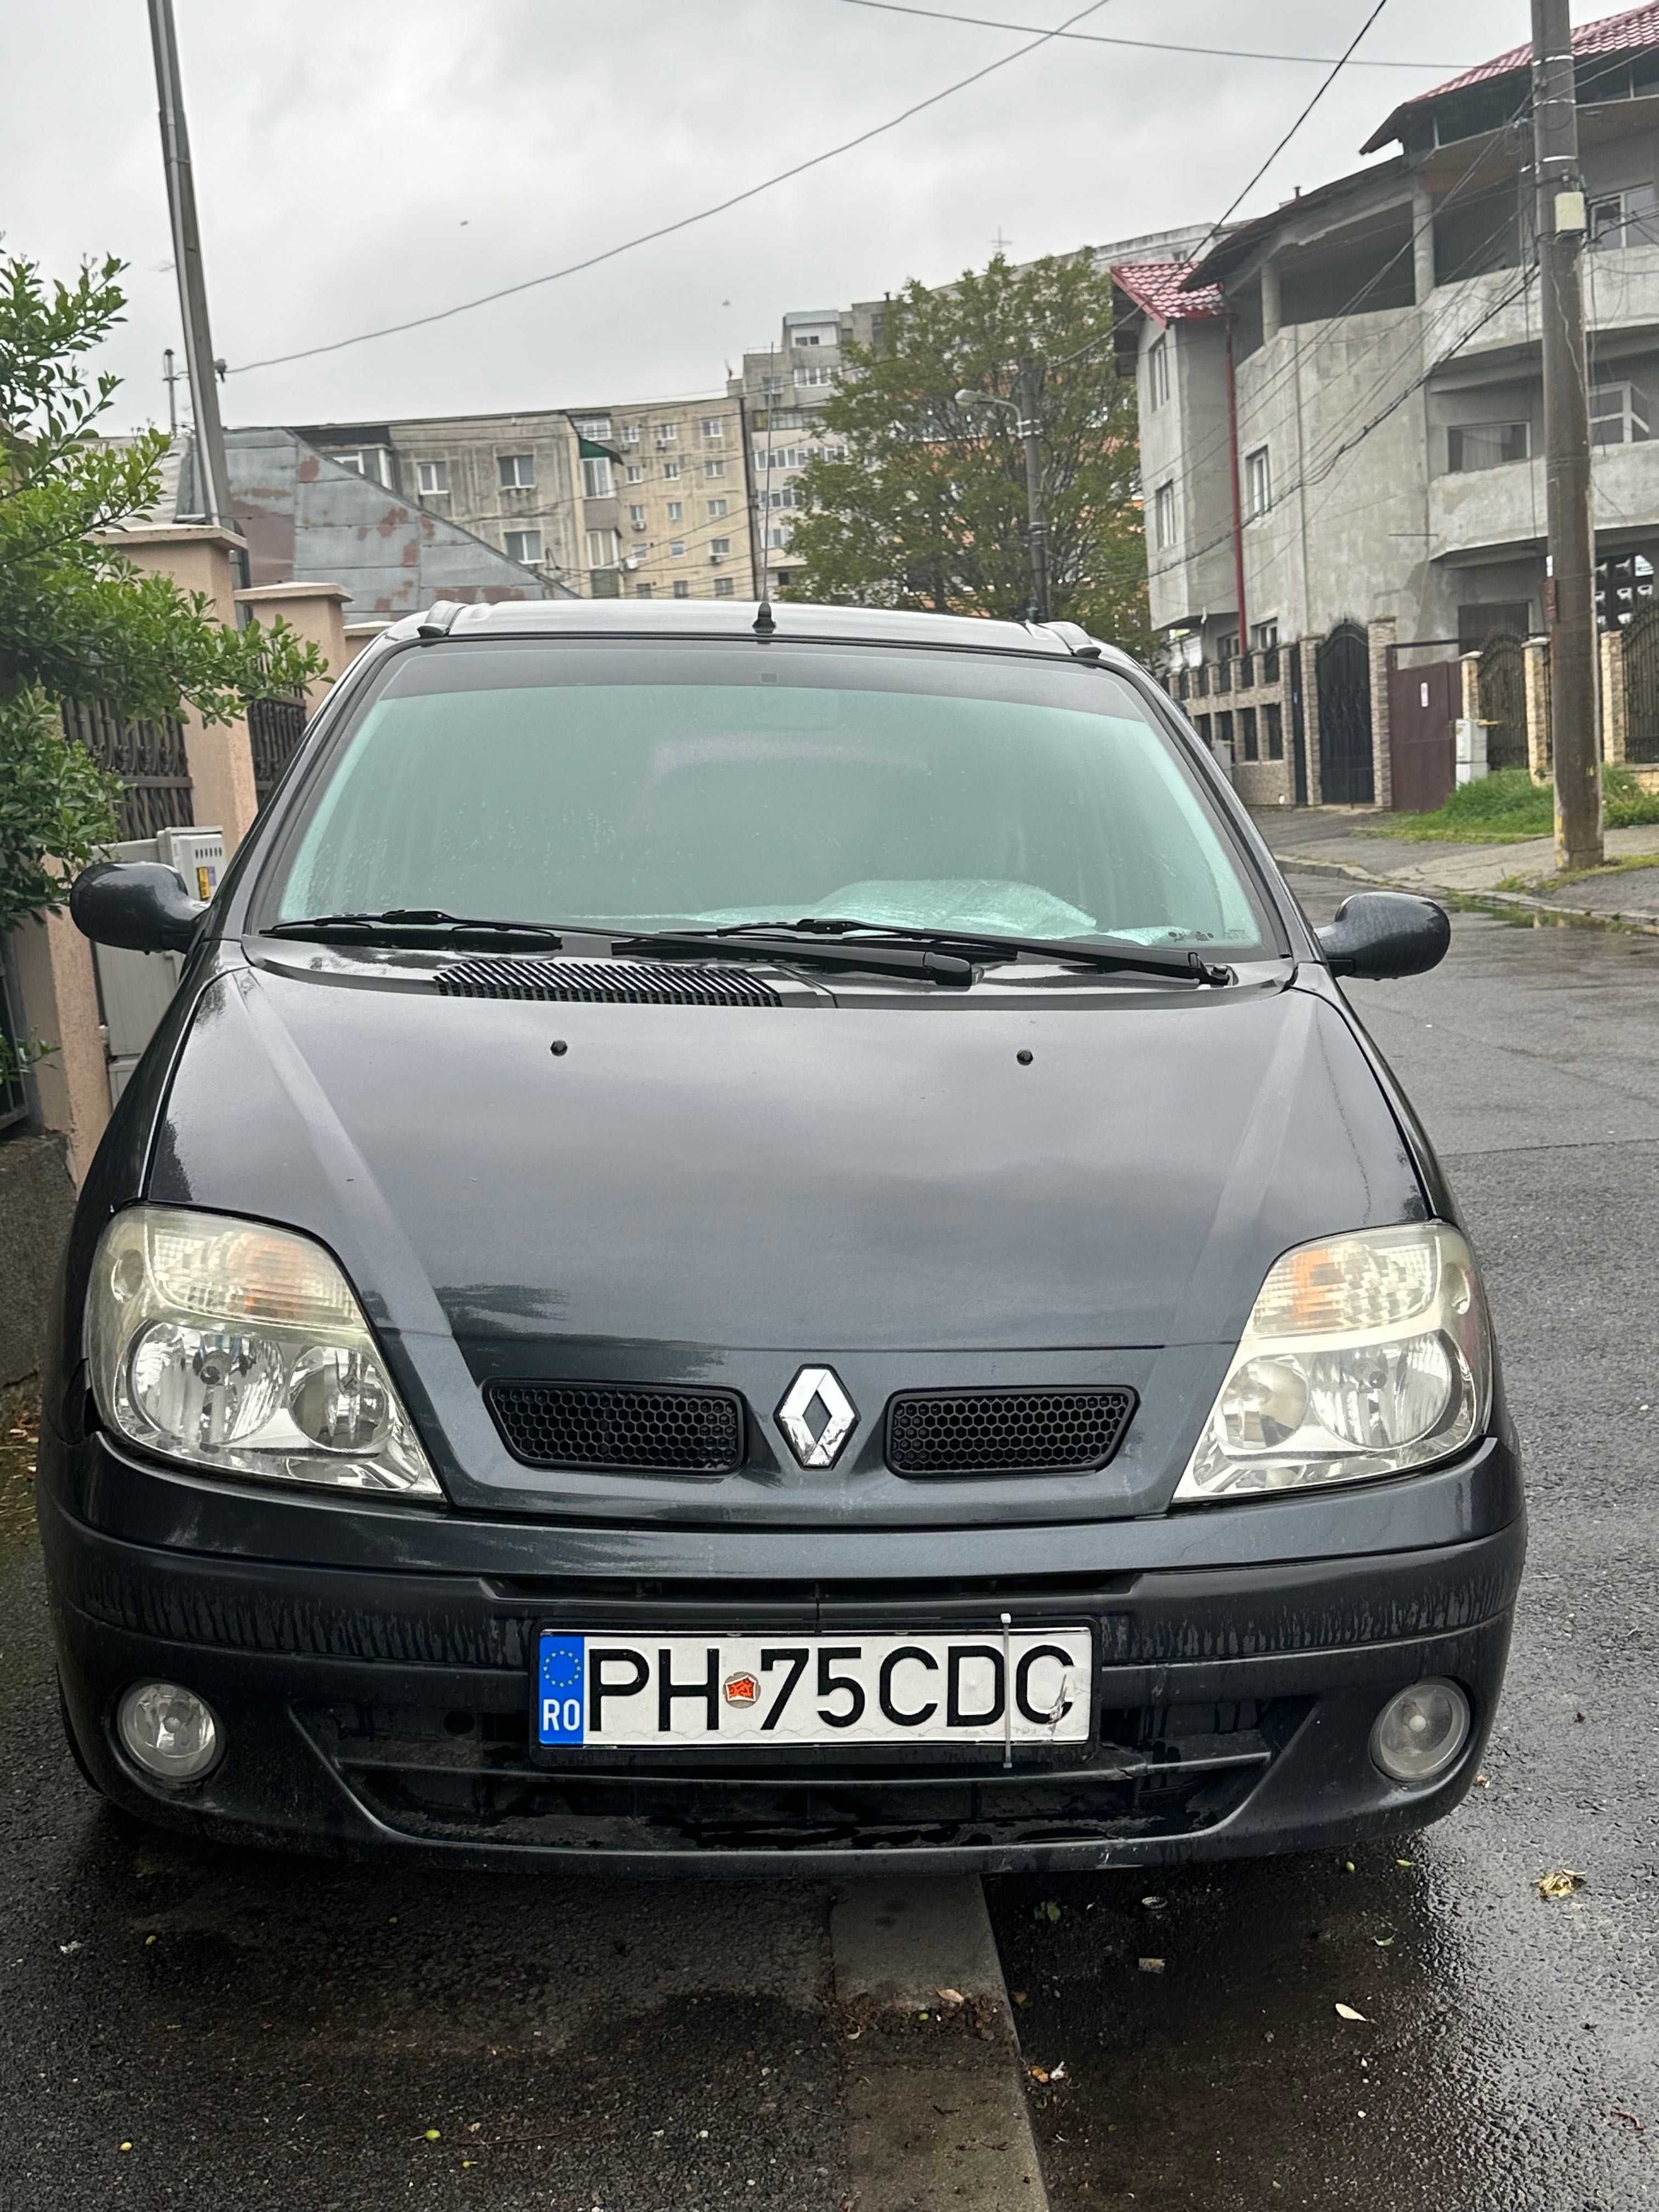 Renault Scenic 2003 1.6 benzina